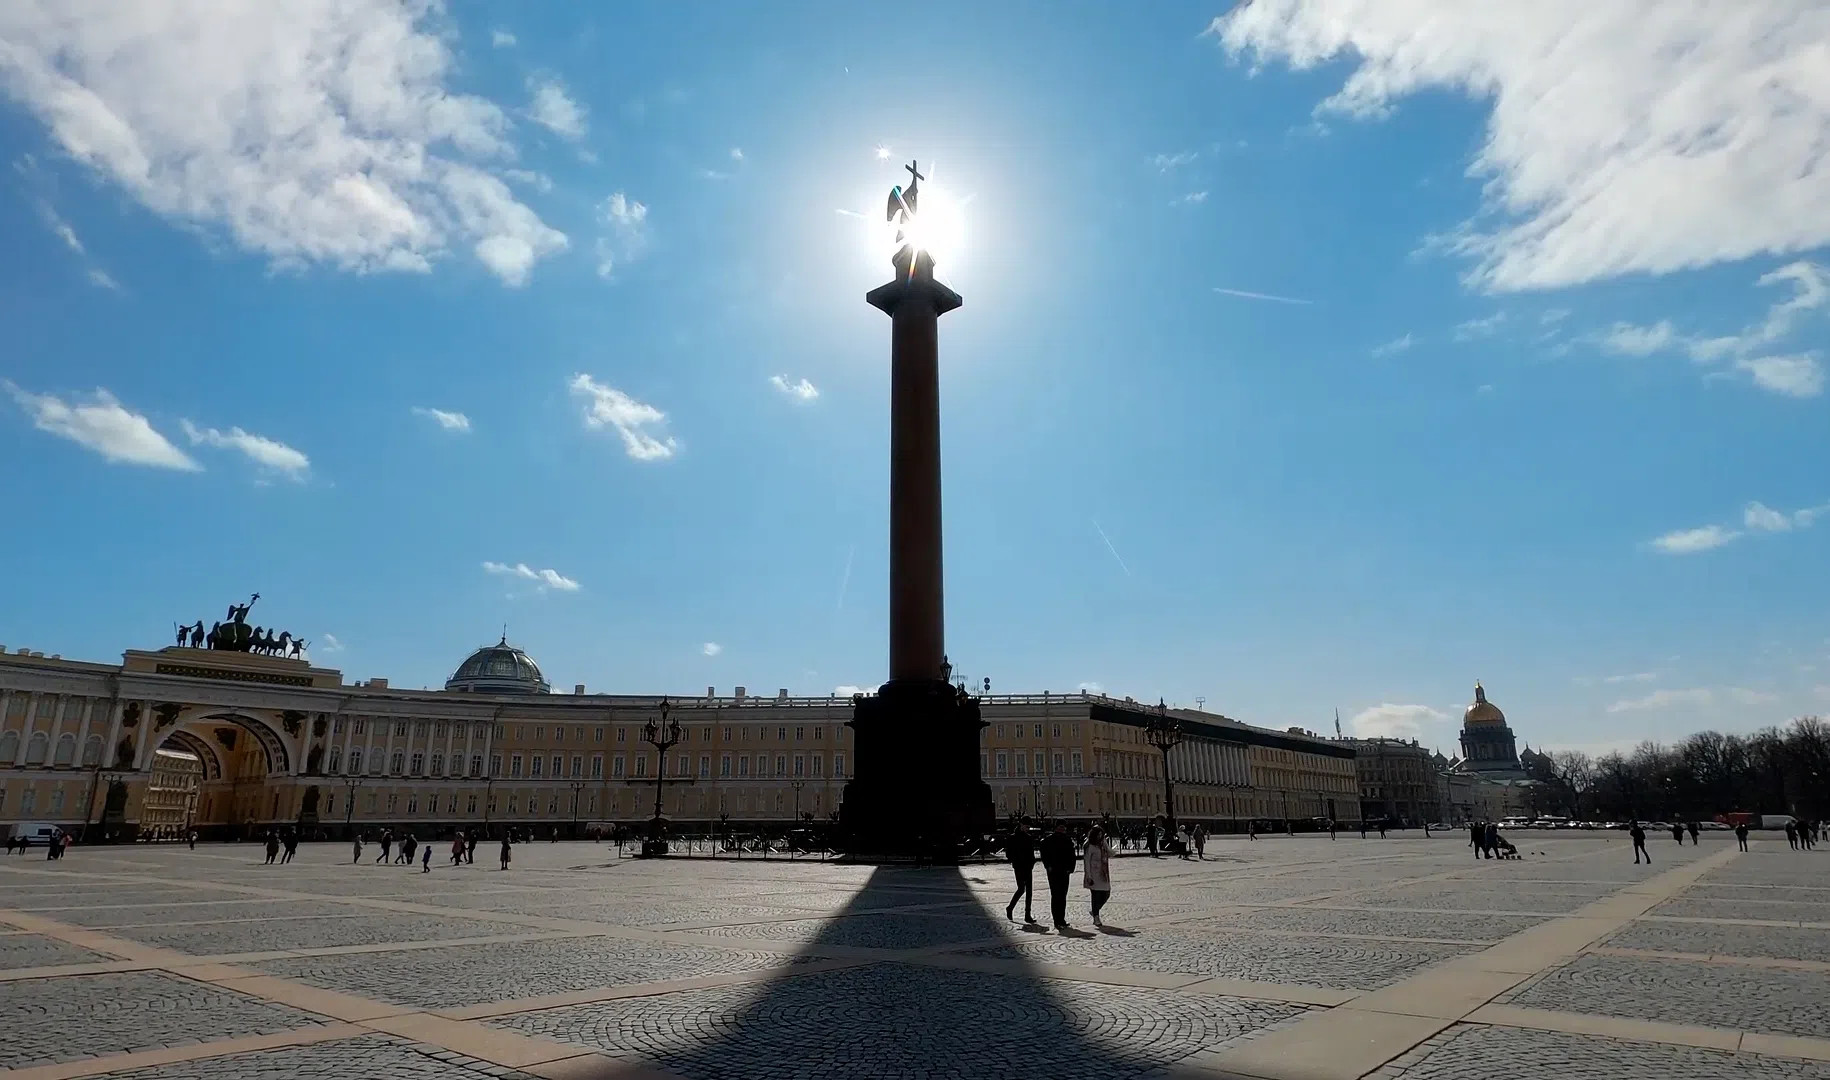 Вступление на престол Петра II и открытие памятника Суворову: Ключевые события истории Петербурга 17 мая